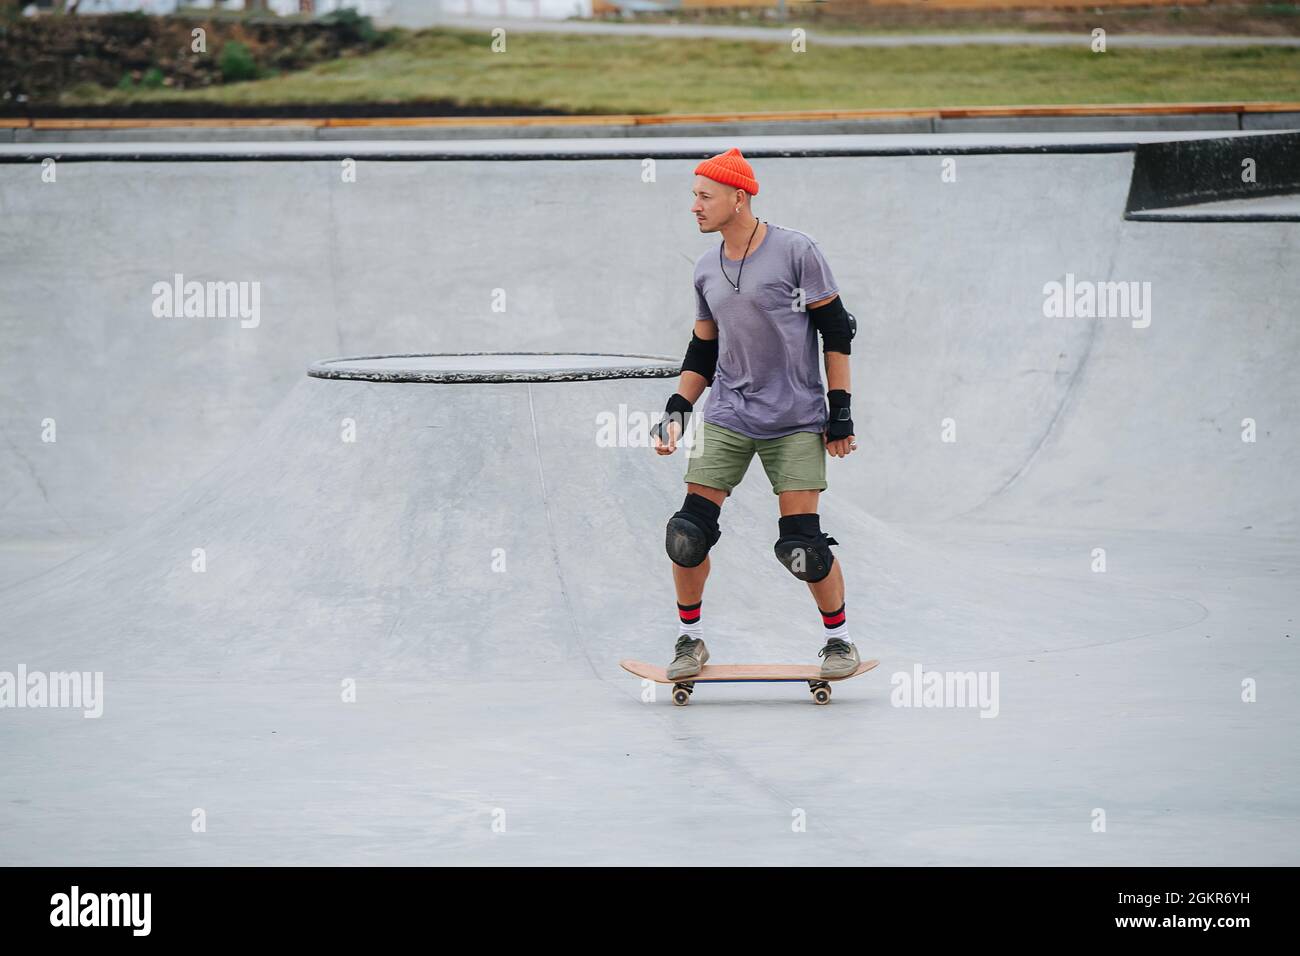 Patineuse mature dans un chapeau de montre sur un skateboard sur un sol en béton dans un parc de skate. Vue latérale, prise de vue longue. Banque D'Images